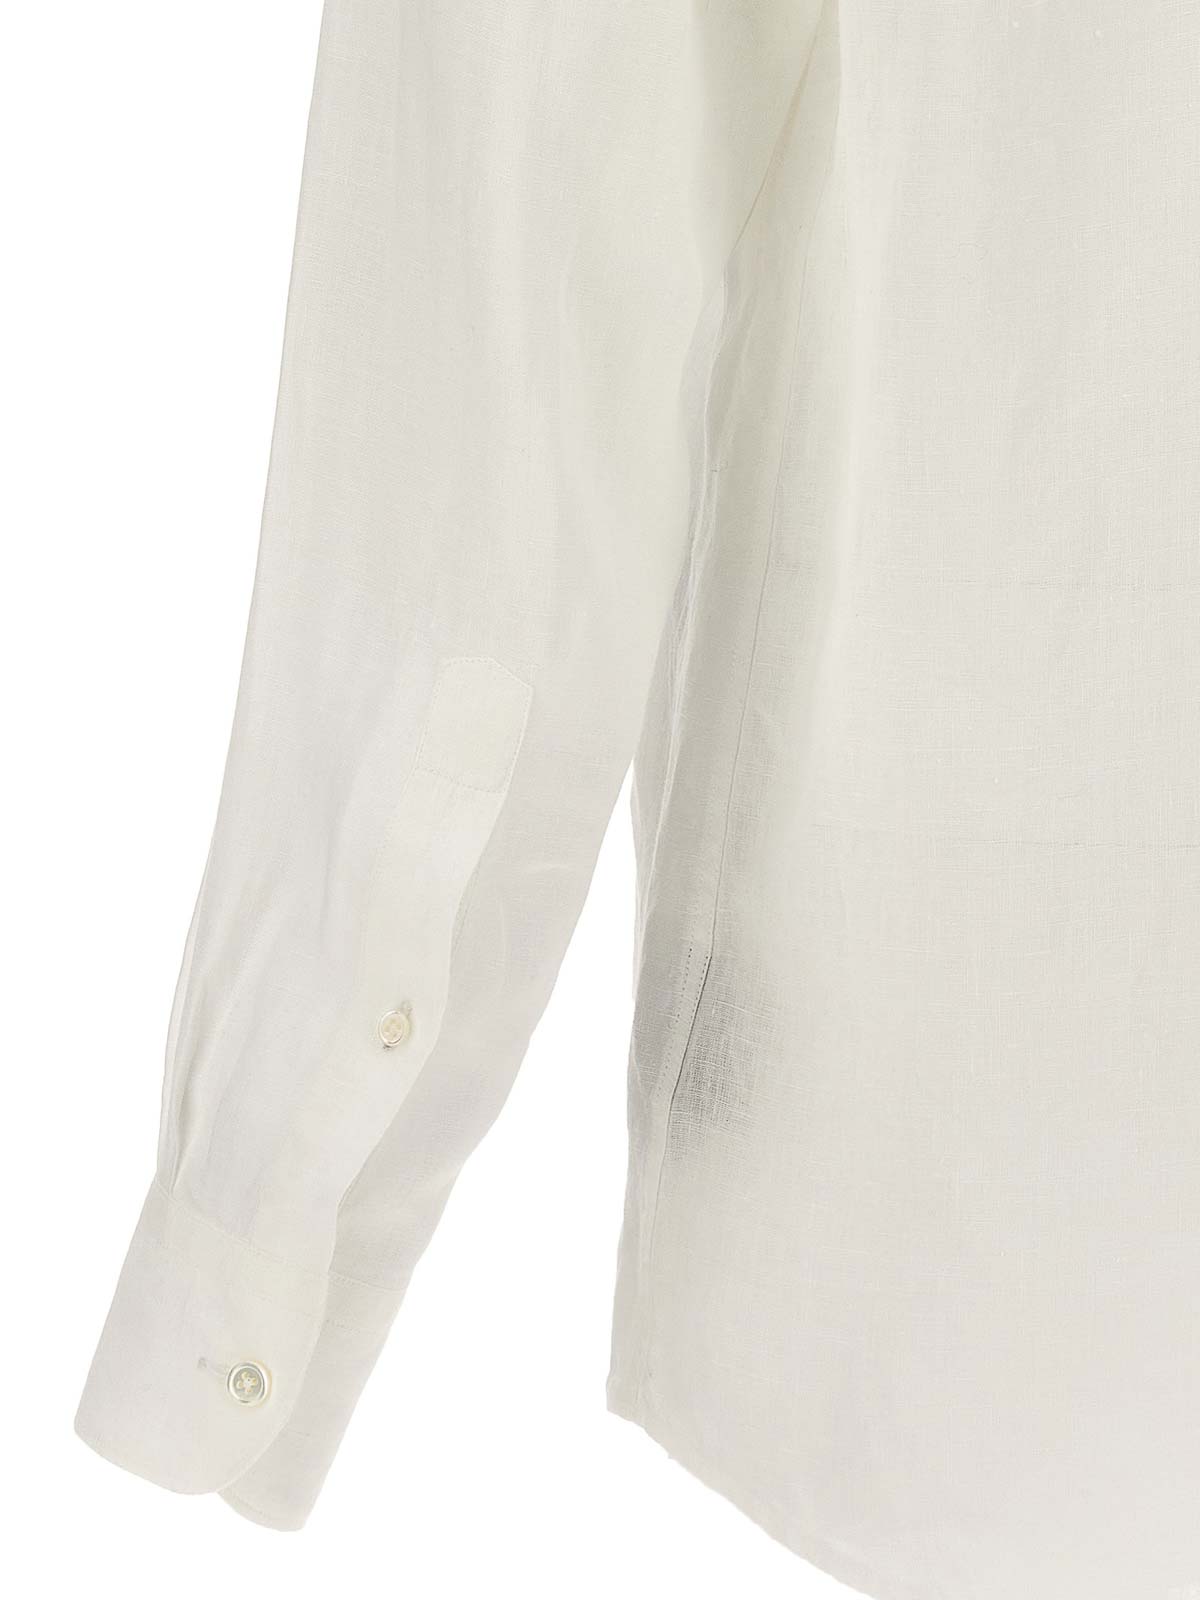 Shop Zegna Camisa - Blanco In White